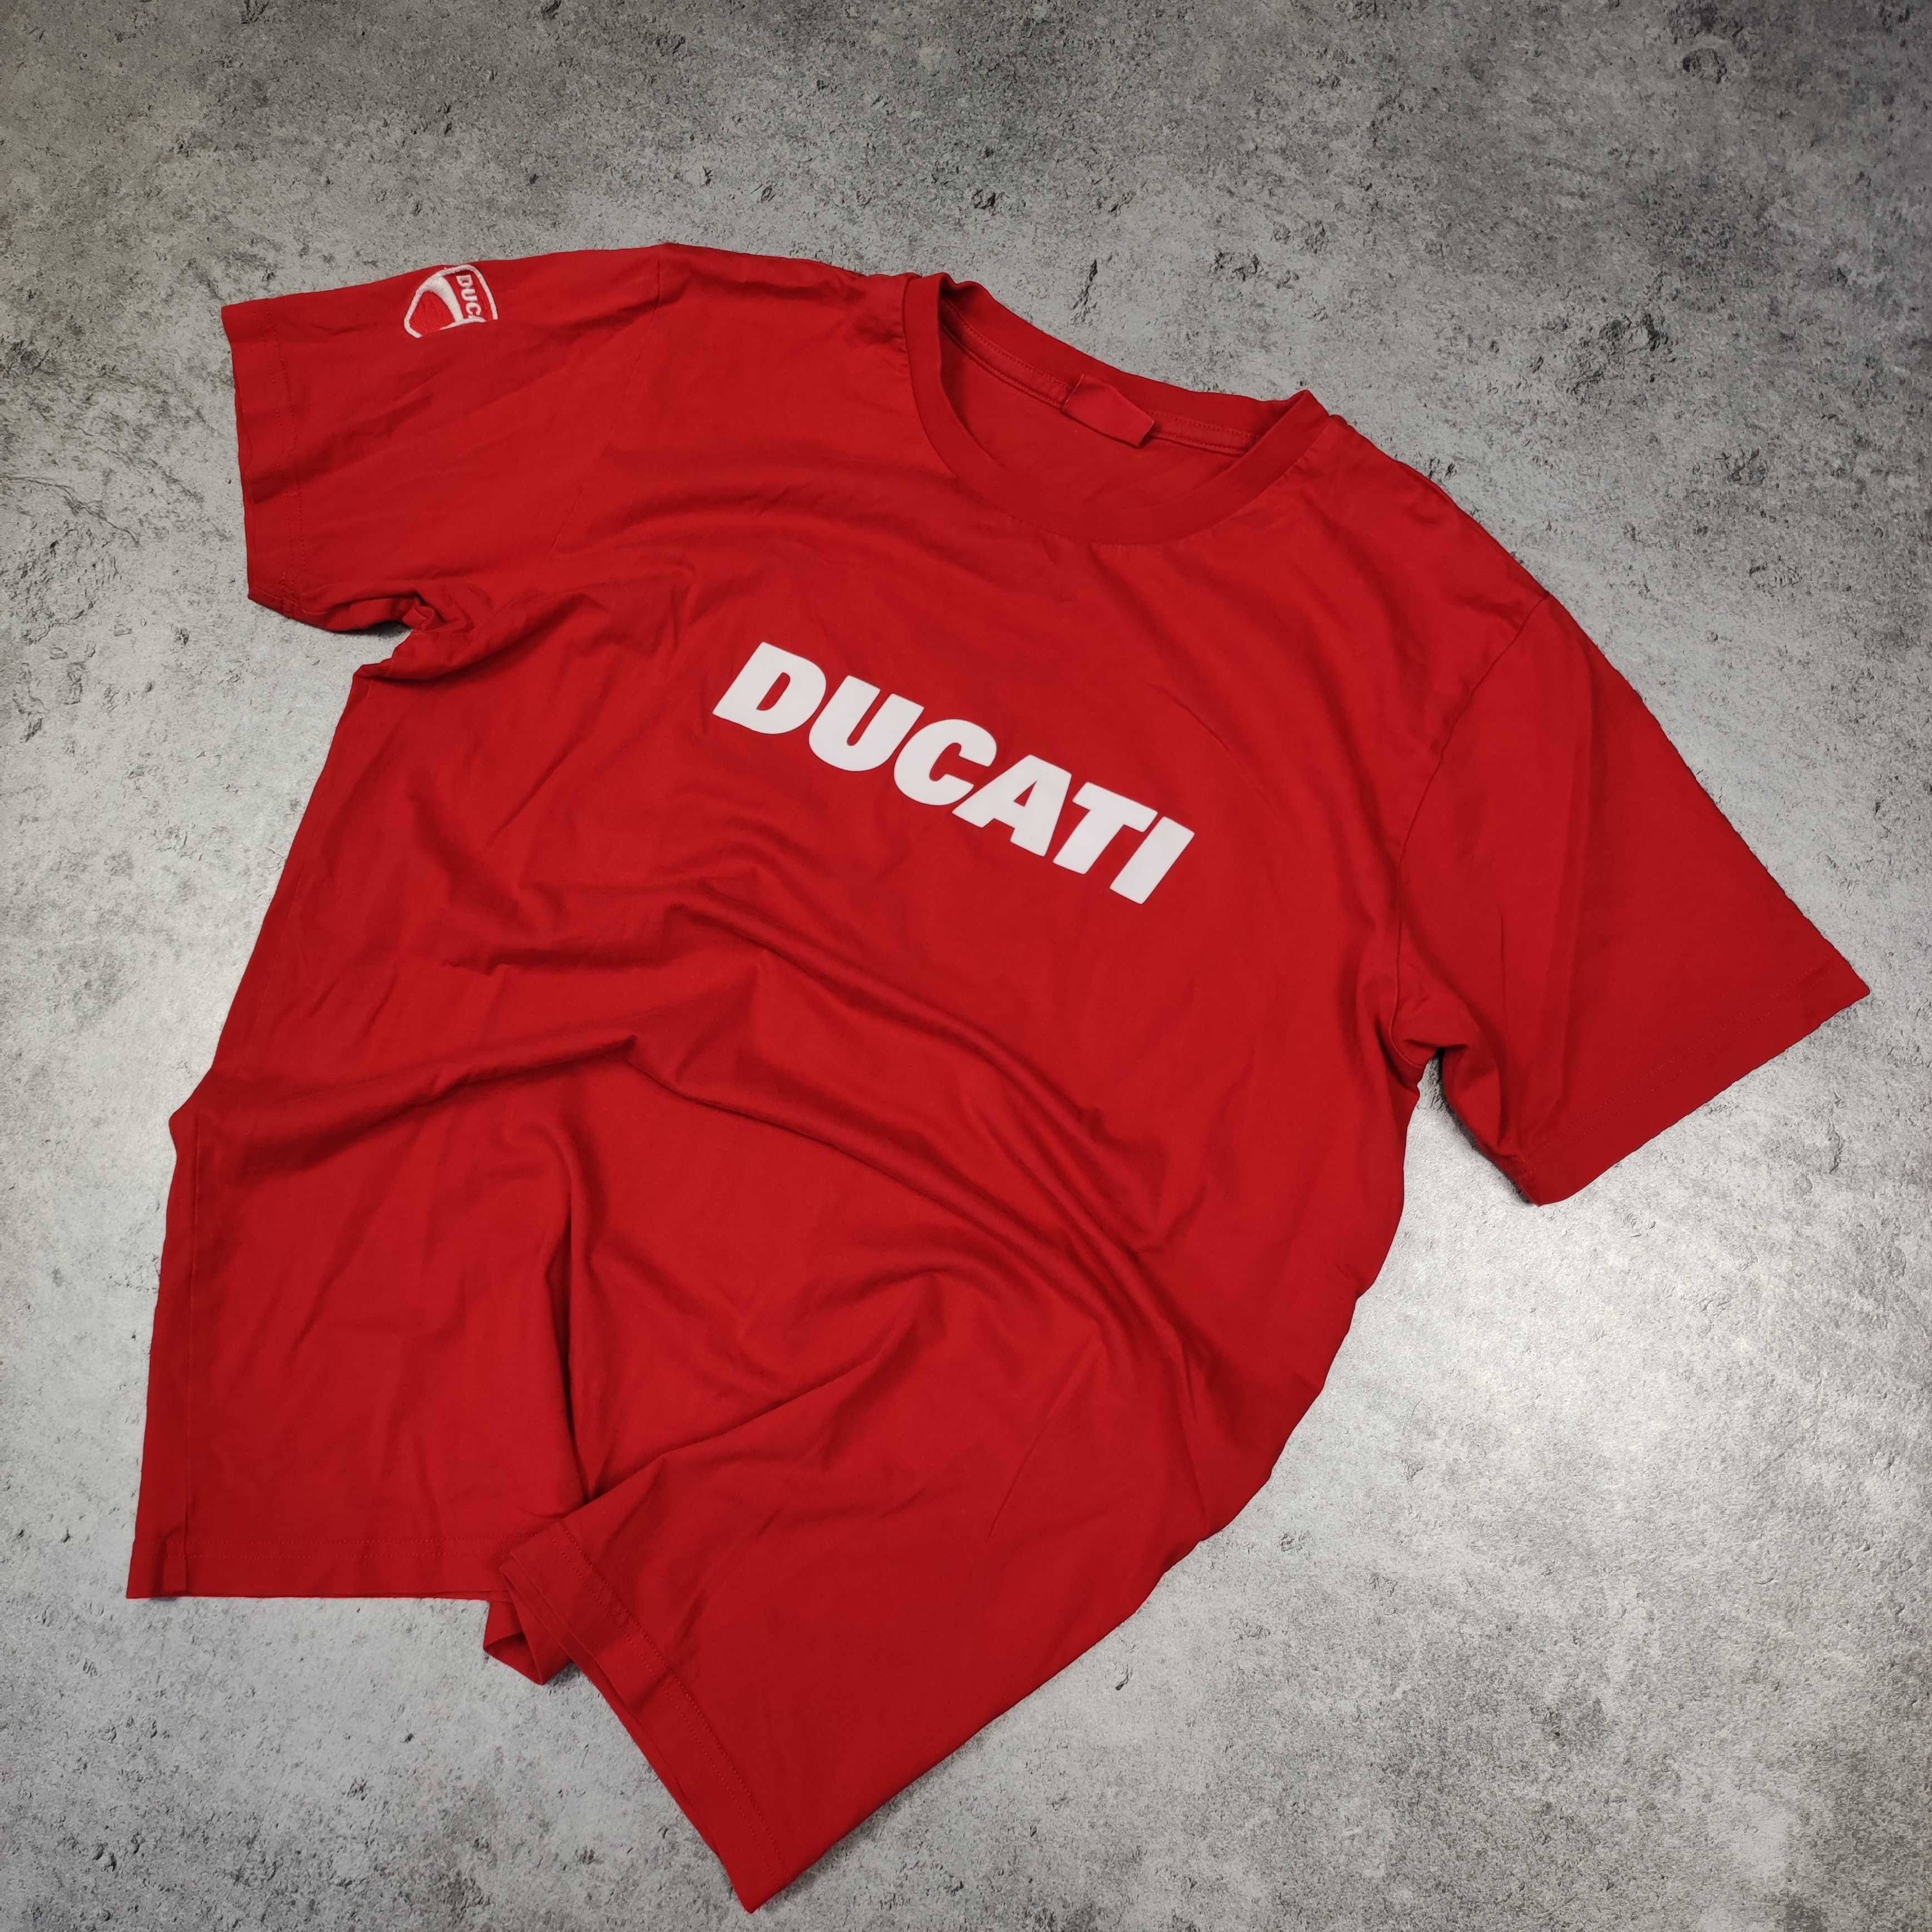 MĘSKA Koszulka Racing Wyścigowa Motocykle Motory Ducati Duże Logo